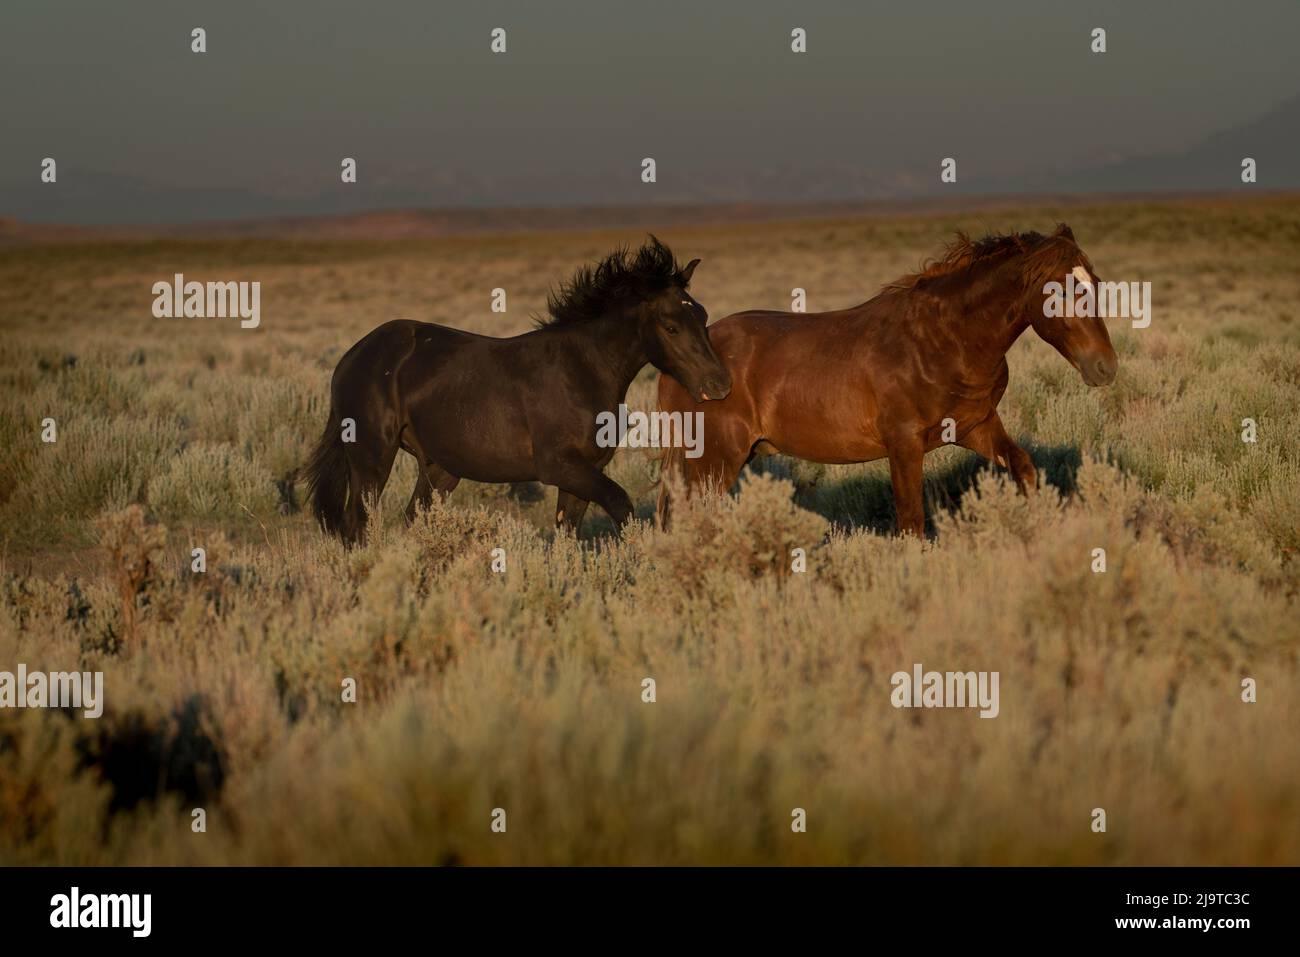 USA, Wyoming. Wilde Pferde traben über Wüstensalbei, während sich der Regensturm nähert. Stockfoto